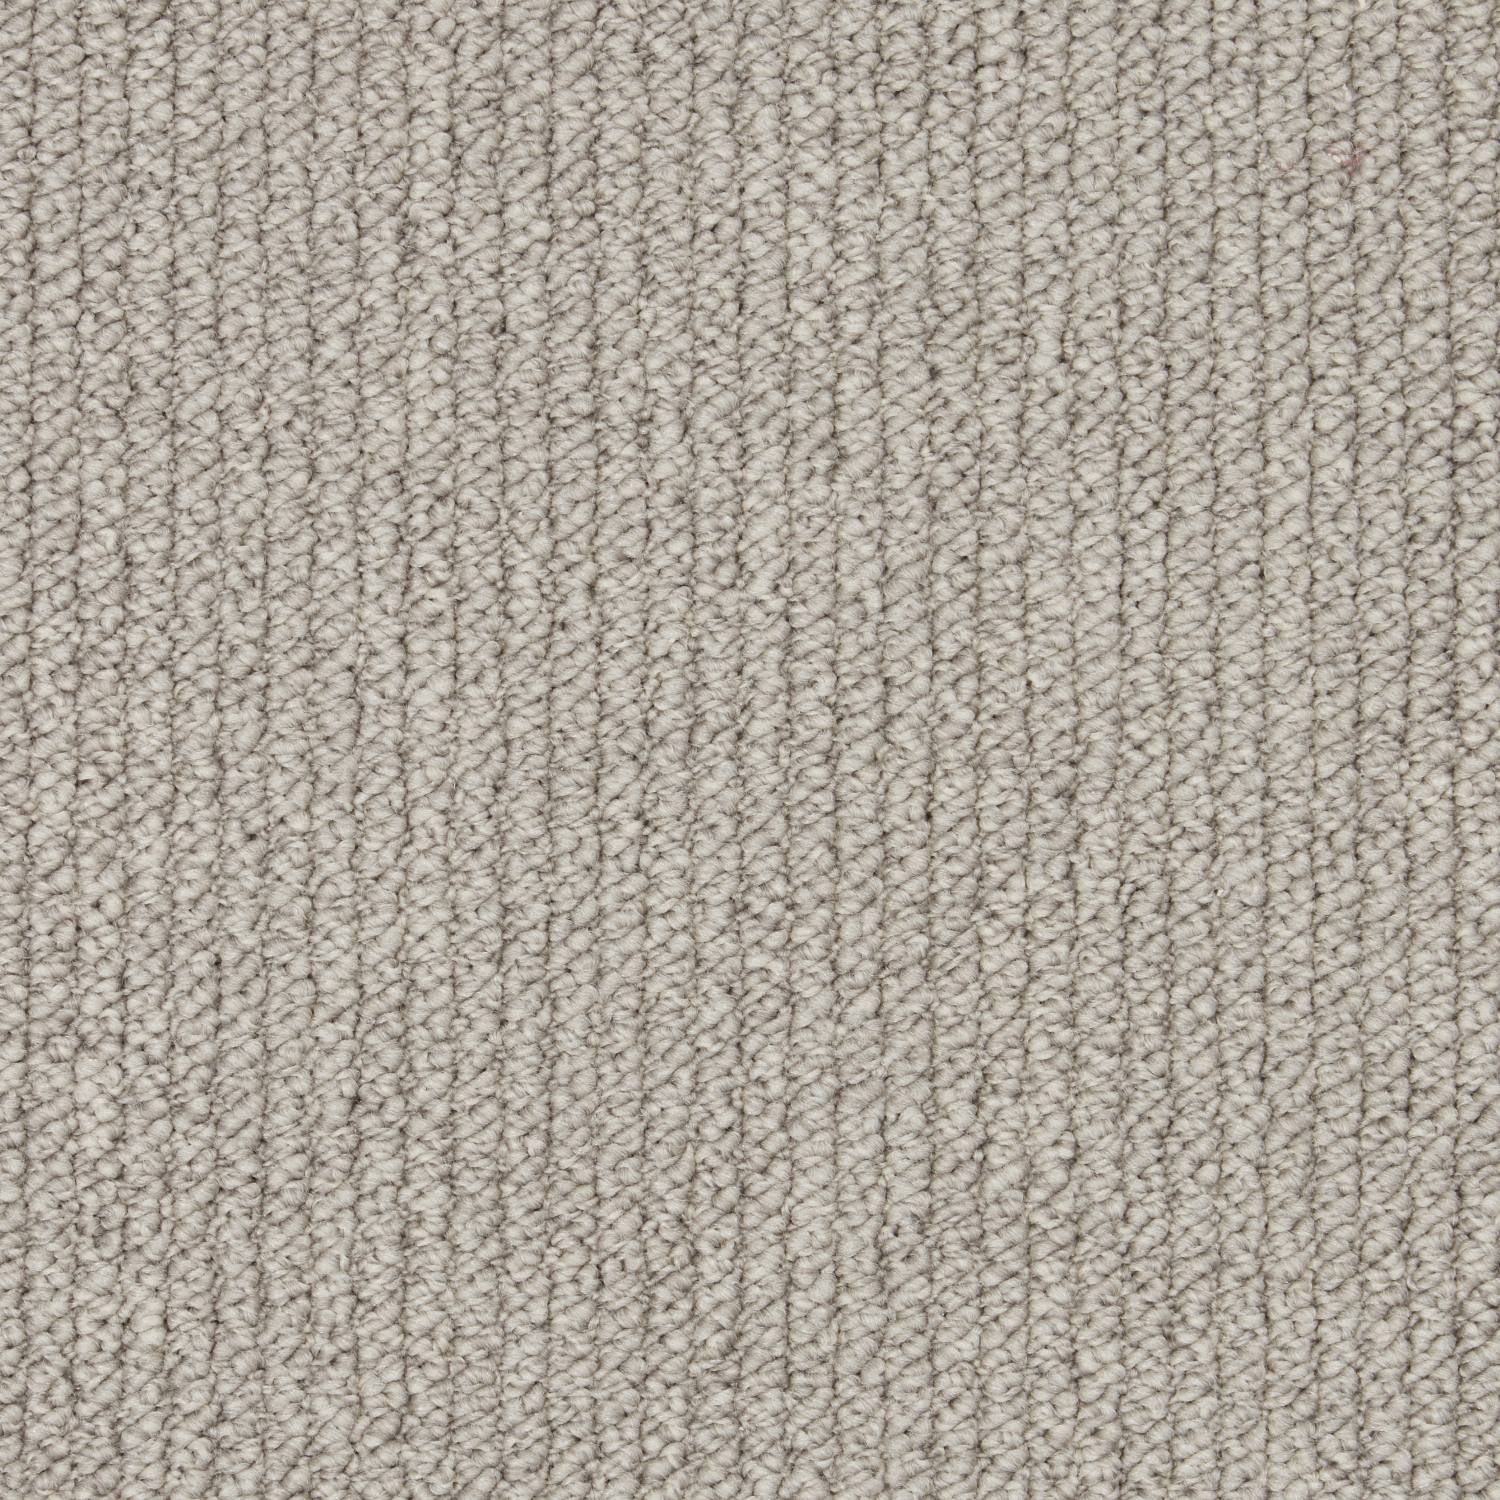 Rural Textures Loop Carpet - Rockery Ribbed